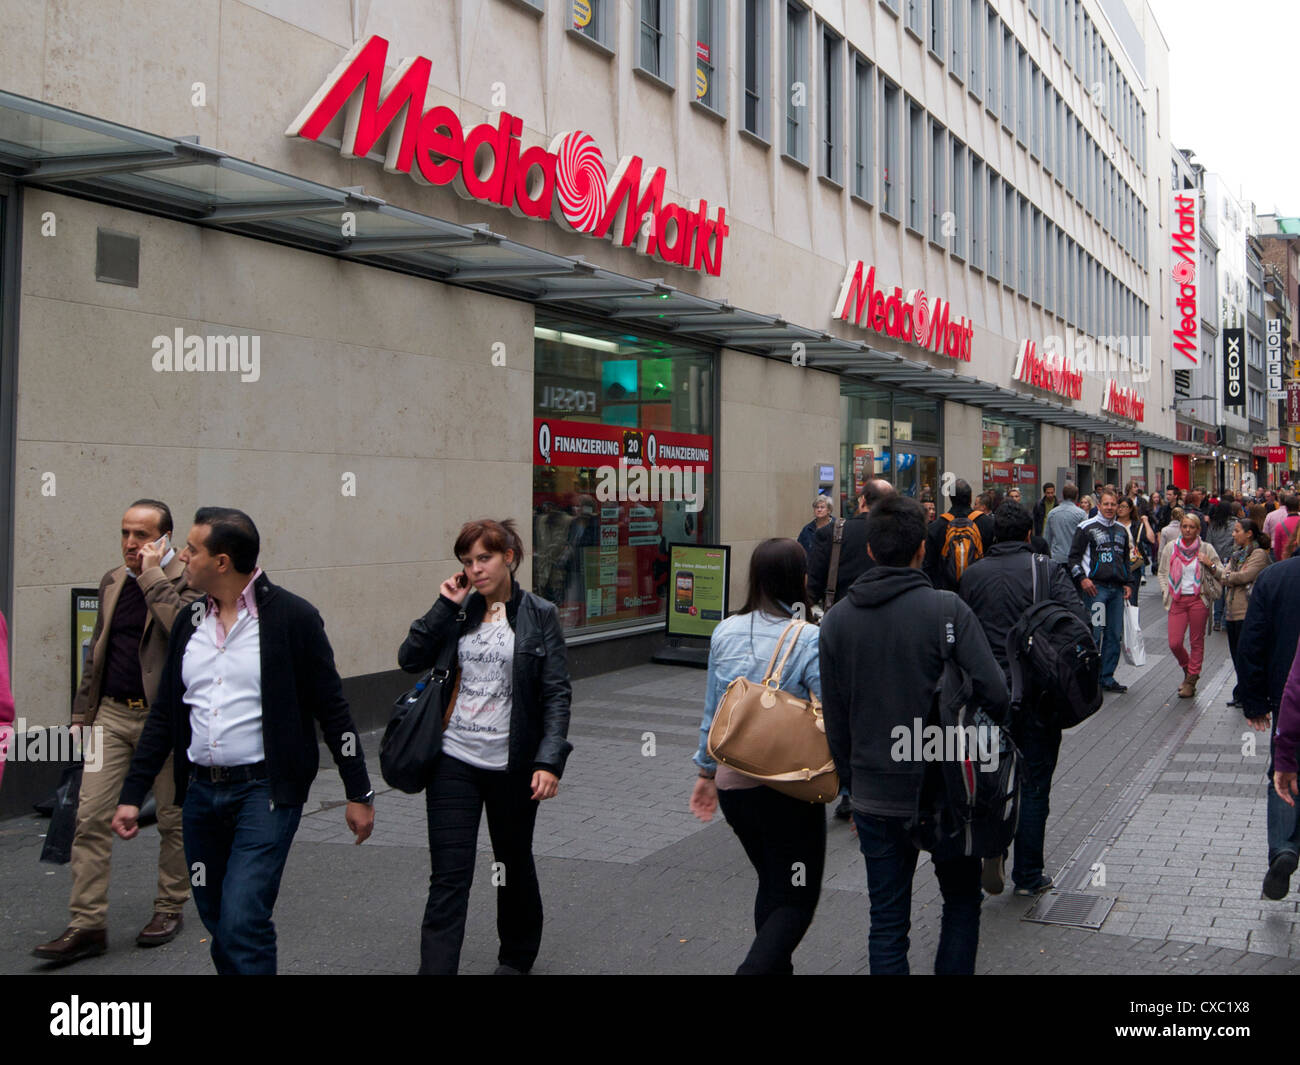 Media Markt speichern, eines der größten europäischen Elektronik-Handelsketten in Köln. Stockfoto